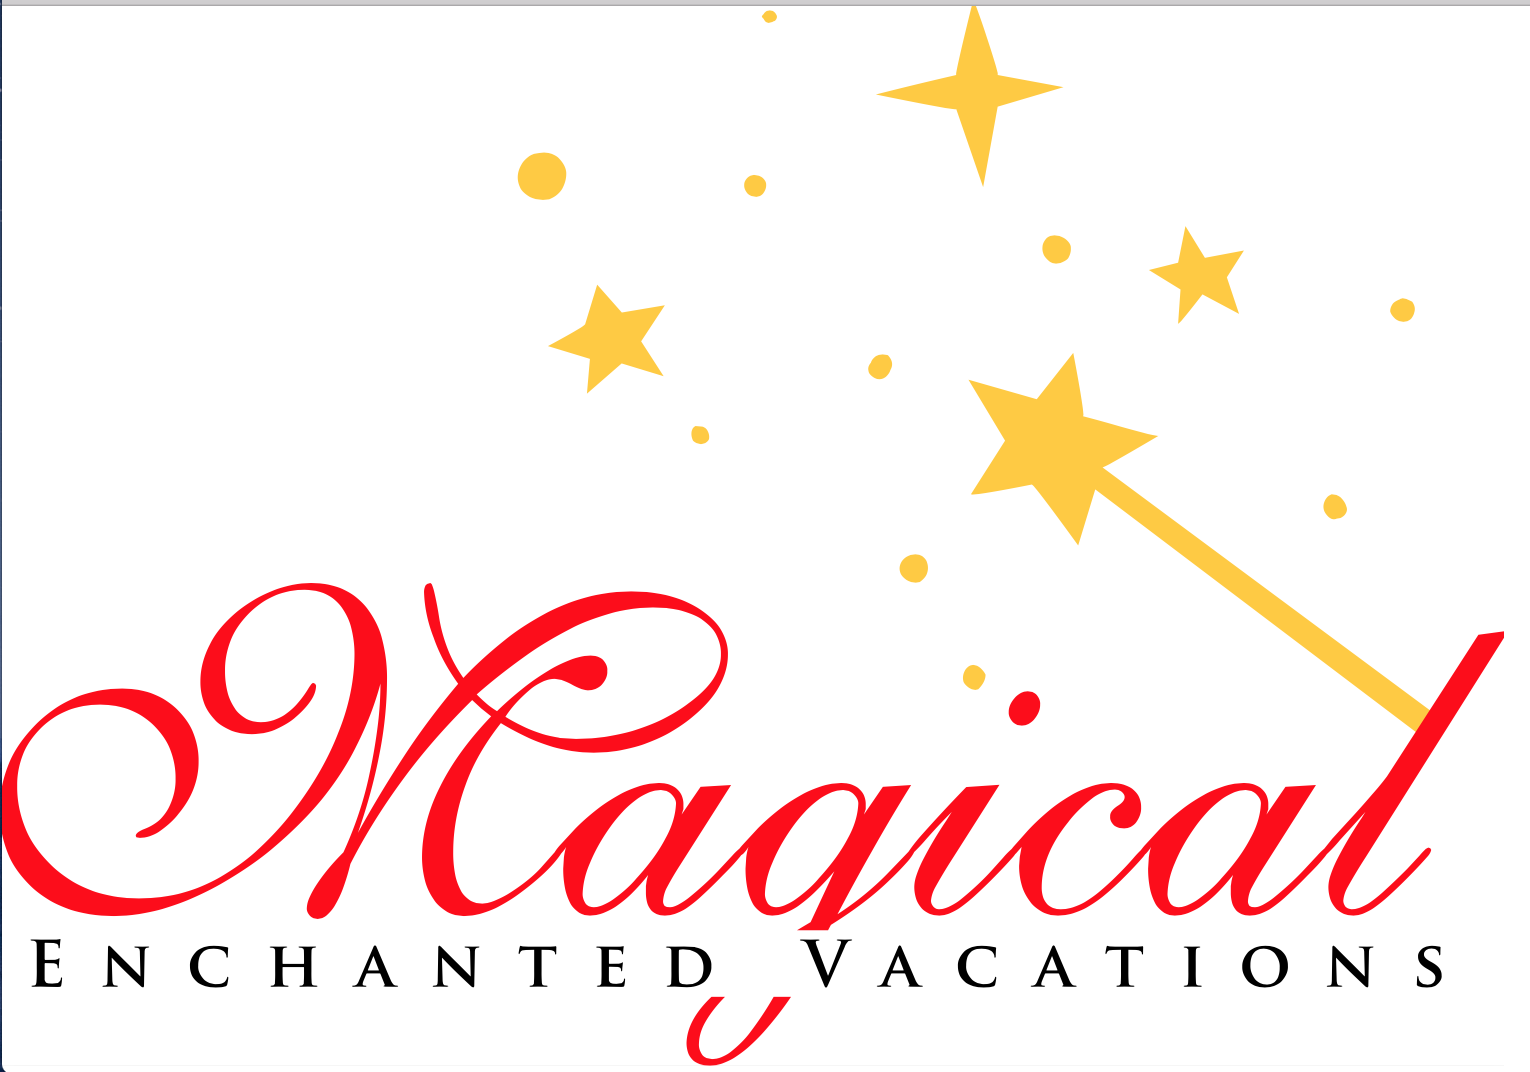 Magical Enchanted Vacations